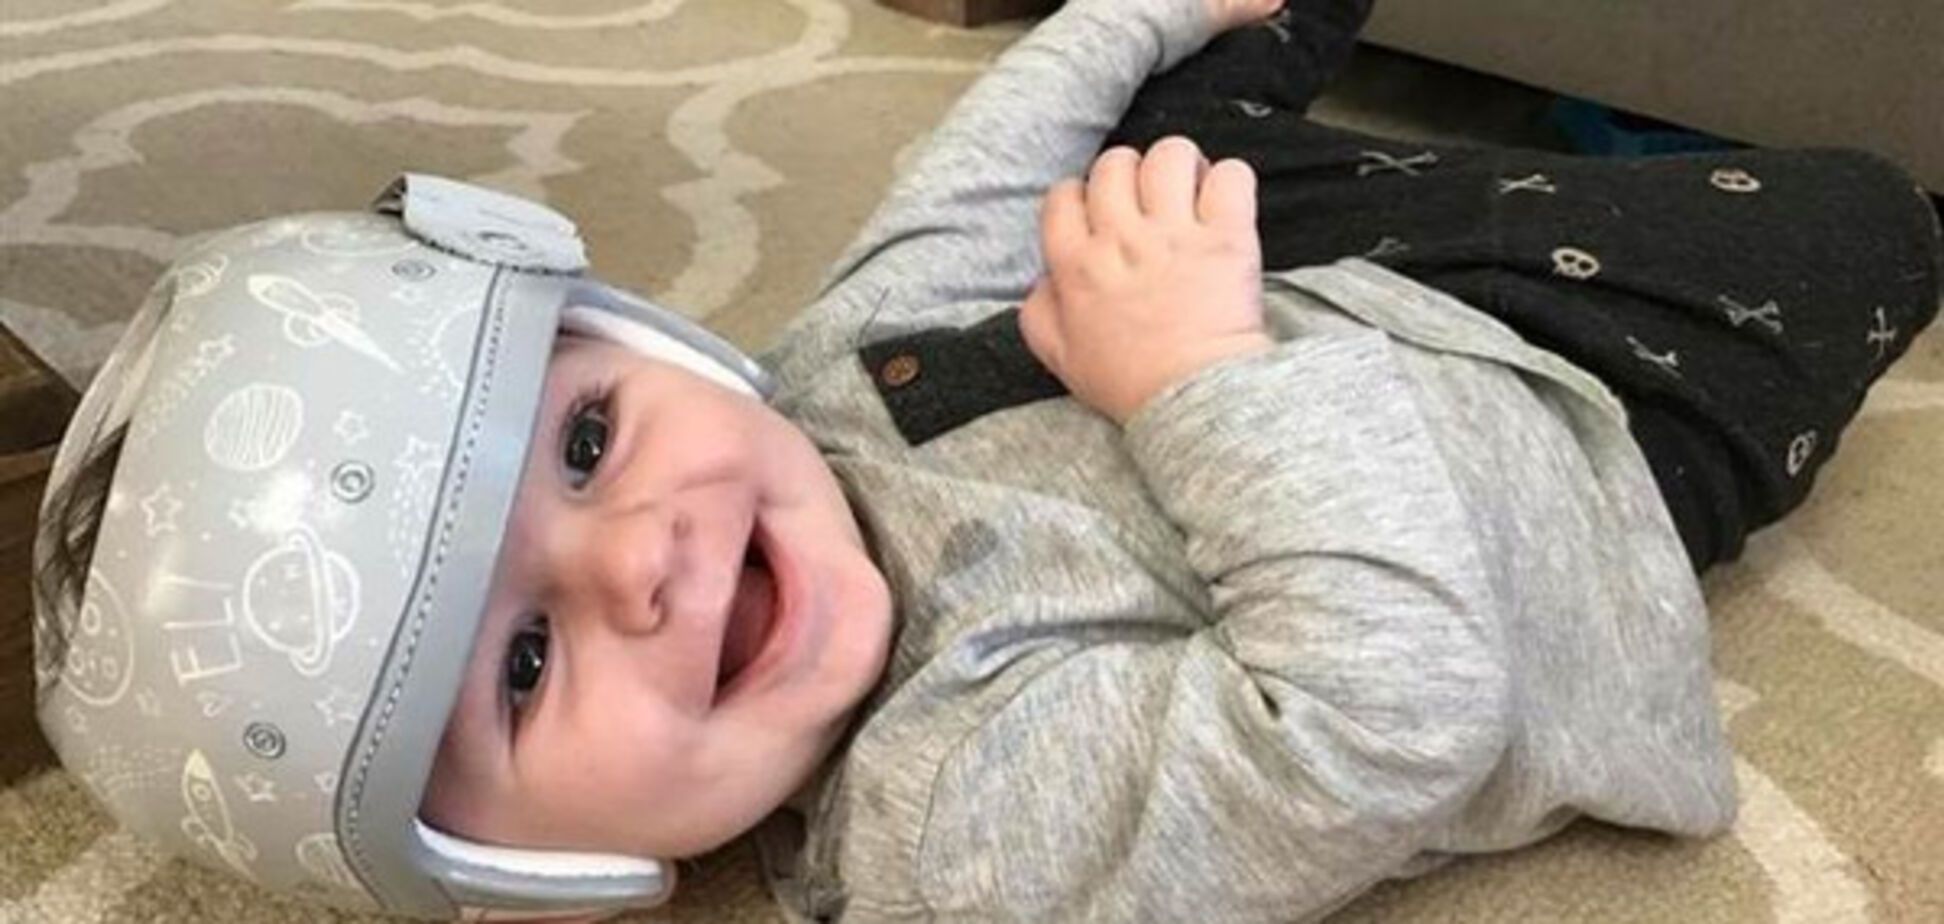 Ярко и забавно: мама сделала так, чтобы медицинский шлем сына вызывал у людей не жалость, а улыбку